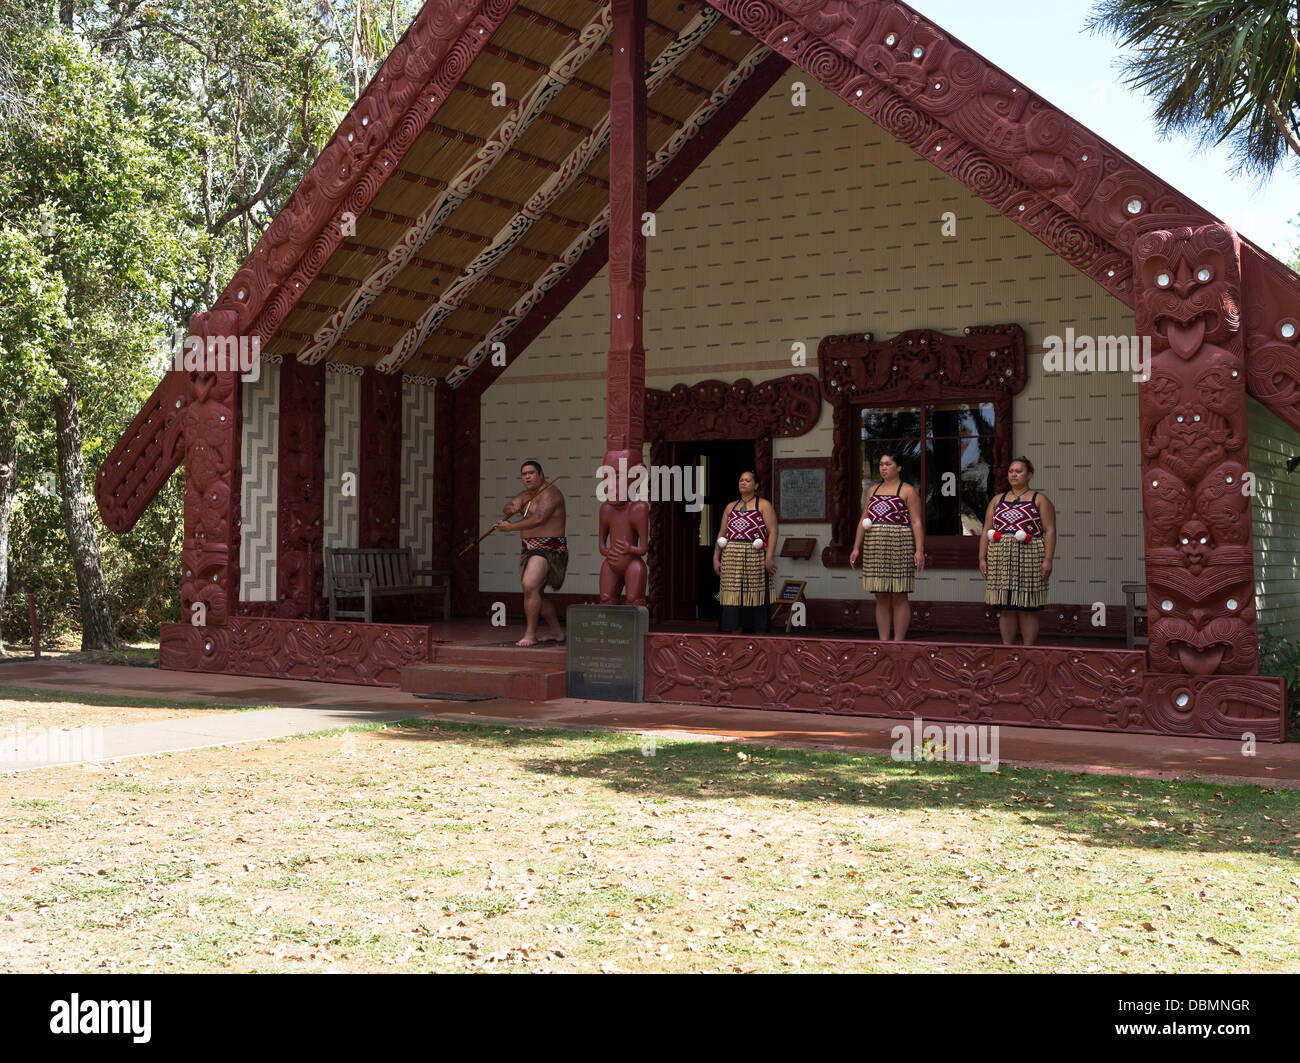 dh Waitangi Vertragsgrund BAY OF ISLANDS NEW ZEALAND NZ Traditionelle Maoris begrüßen Whare Runanga Maori Treffen Haus Schnitzereien Kultur Menschen Stockfoto